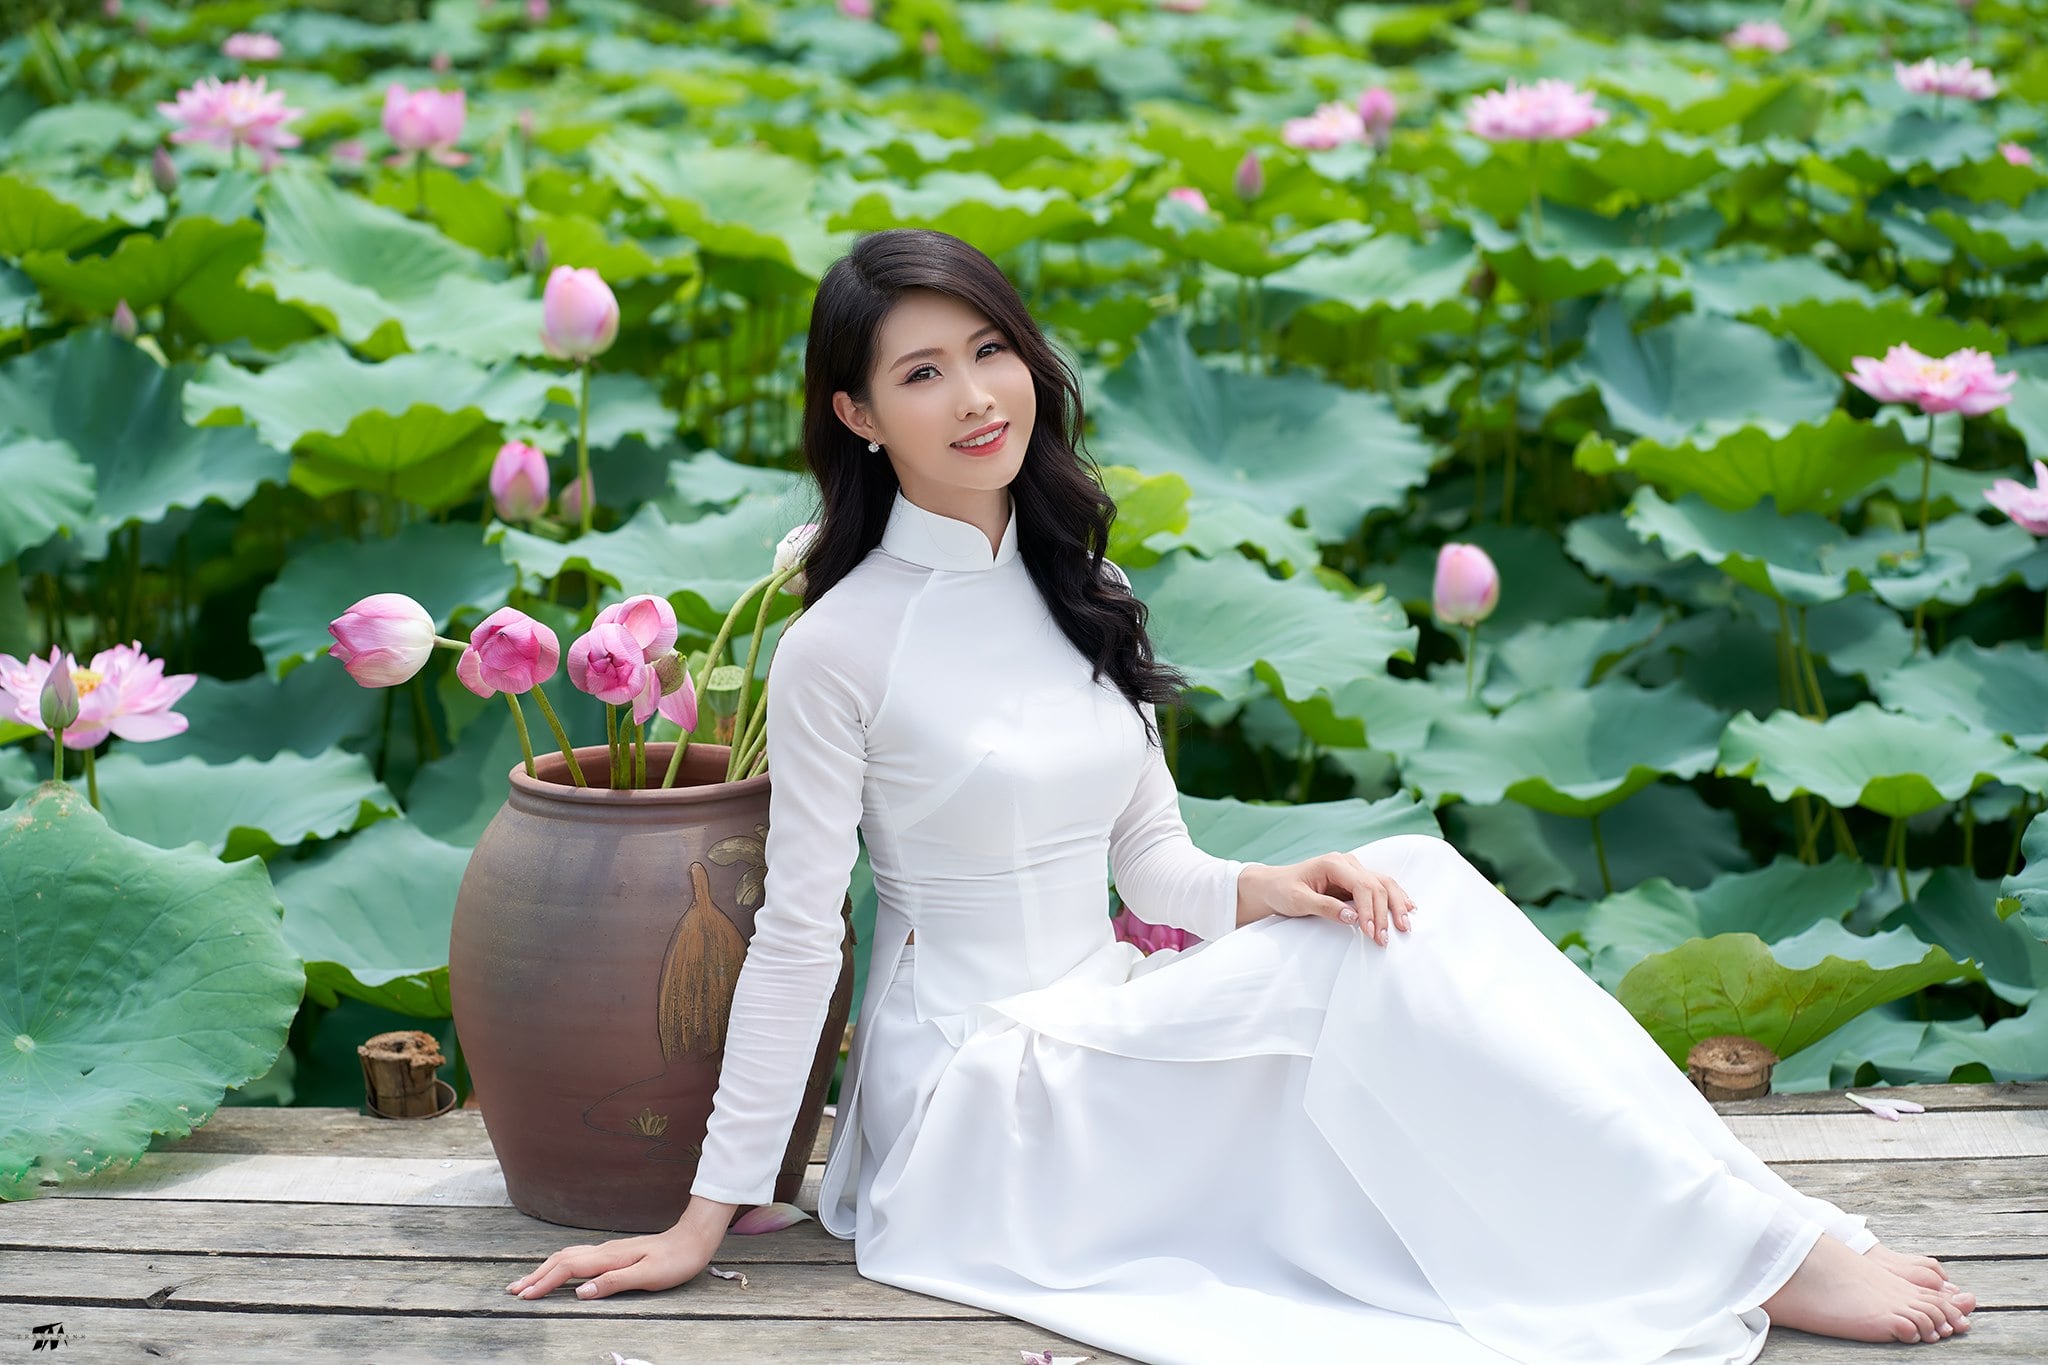 Áo dài: Áo dài - trang phục truyền thống của phụ nữ Việt Nam, mang đậm nét tinh hoa văn hóa. Hãy ngắm nhìn bức ảnh áo dài này để yêu thích hơn nữa vẻ đẹp cá tính và quyến rũ của phụ nữ Việt Nam.